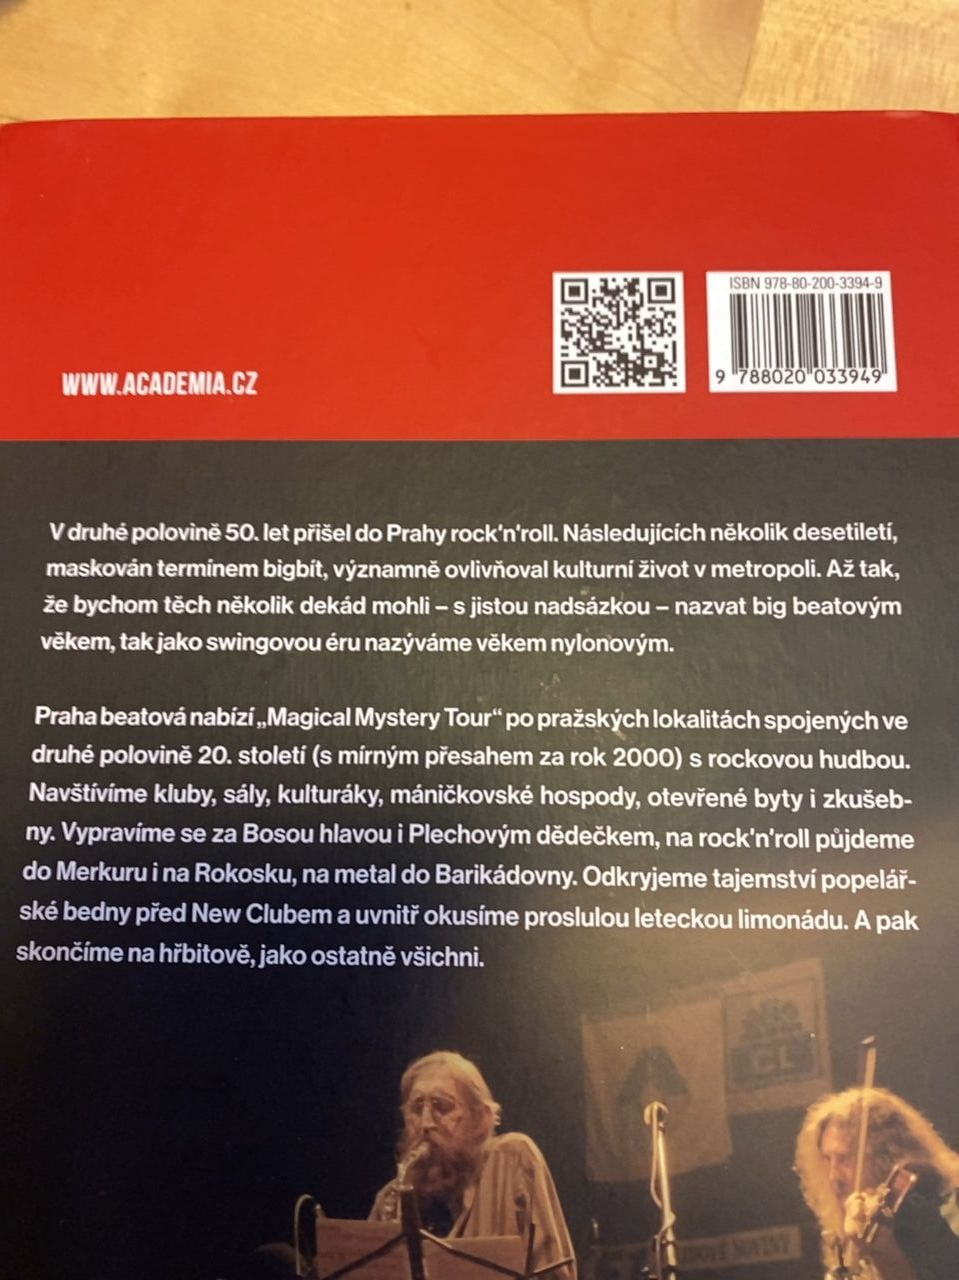 Kniha "Praha beatová" Radek Diestler 